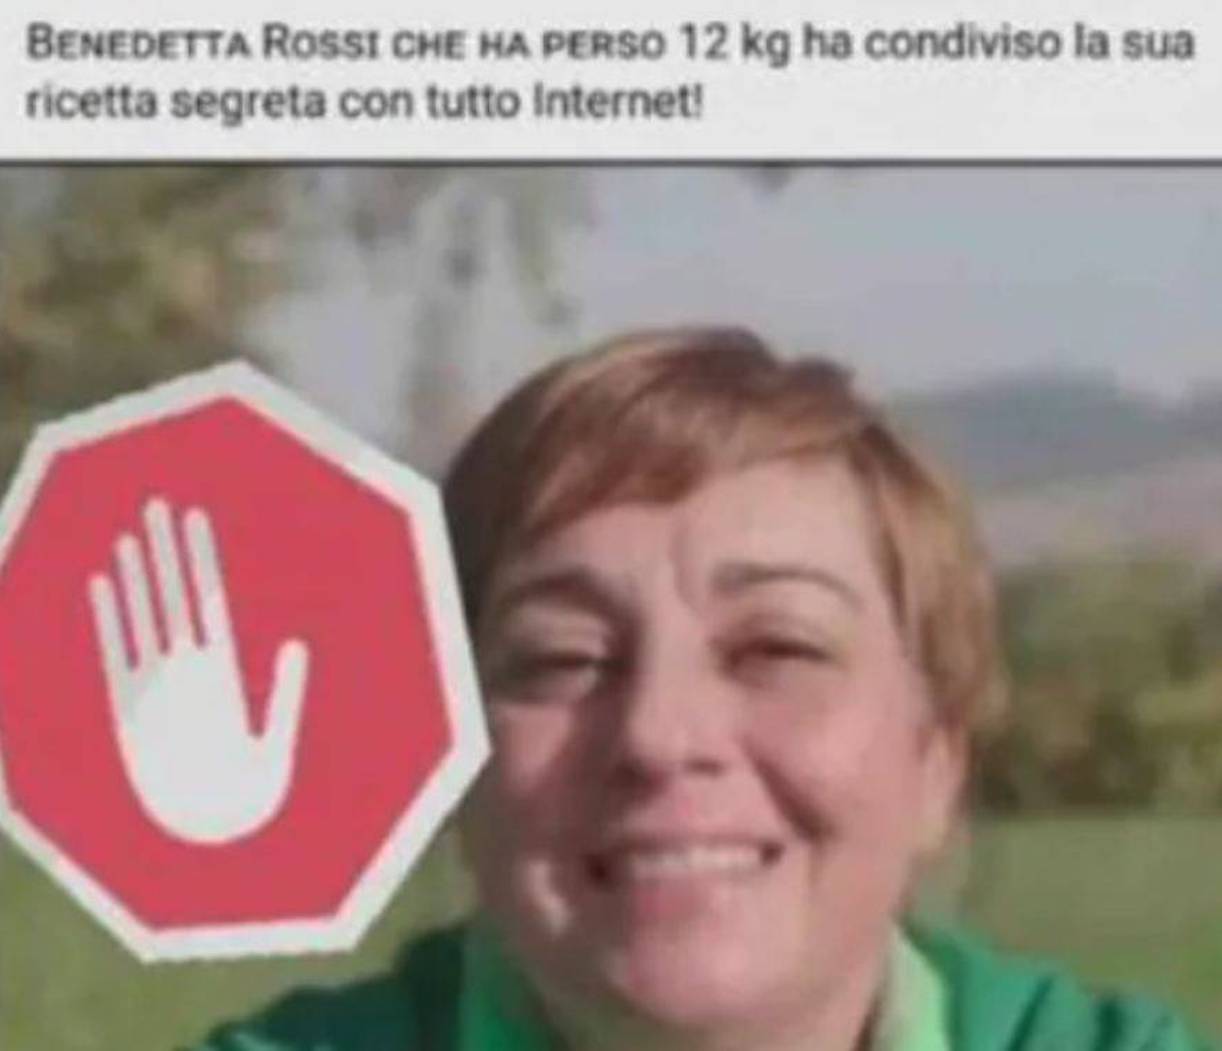 Benedetta Rossi truffata su internet